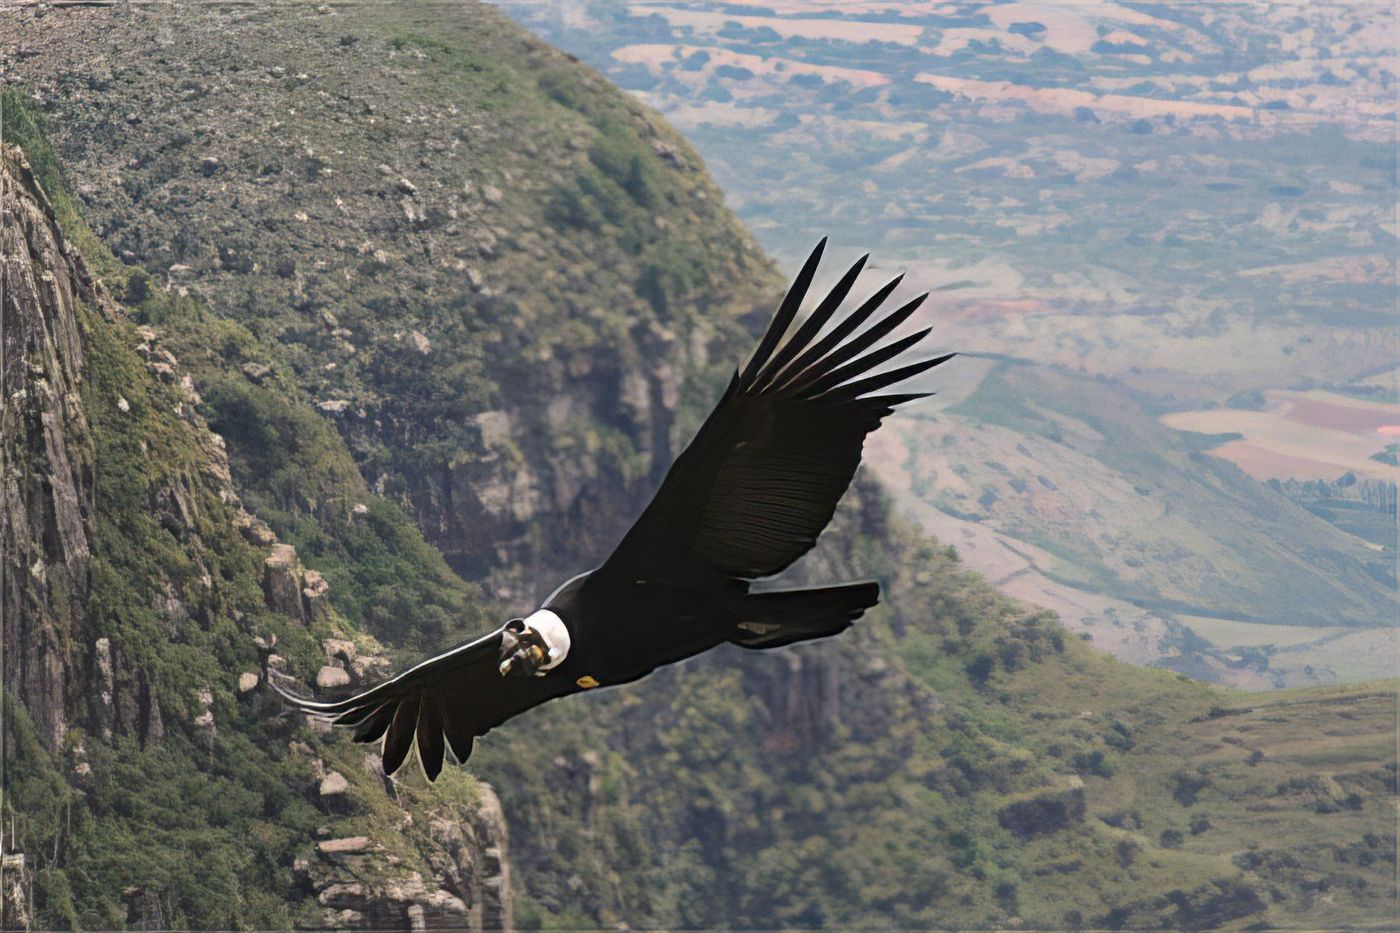 Bon plan tourisme solidaire peu connu dans la magnifique vallée des condors Tarija Bolivie